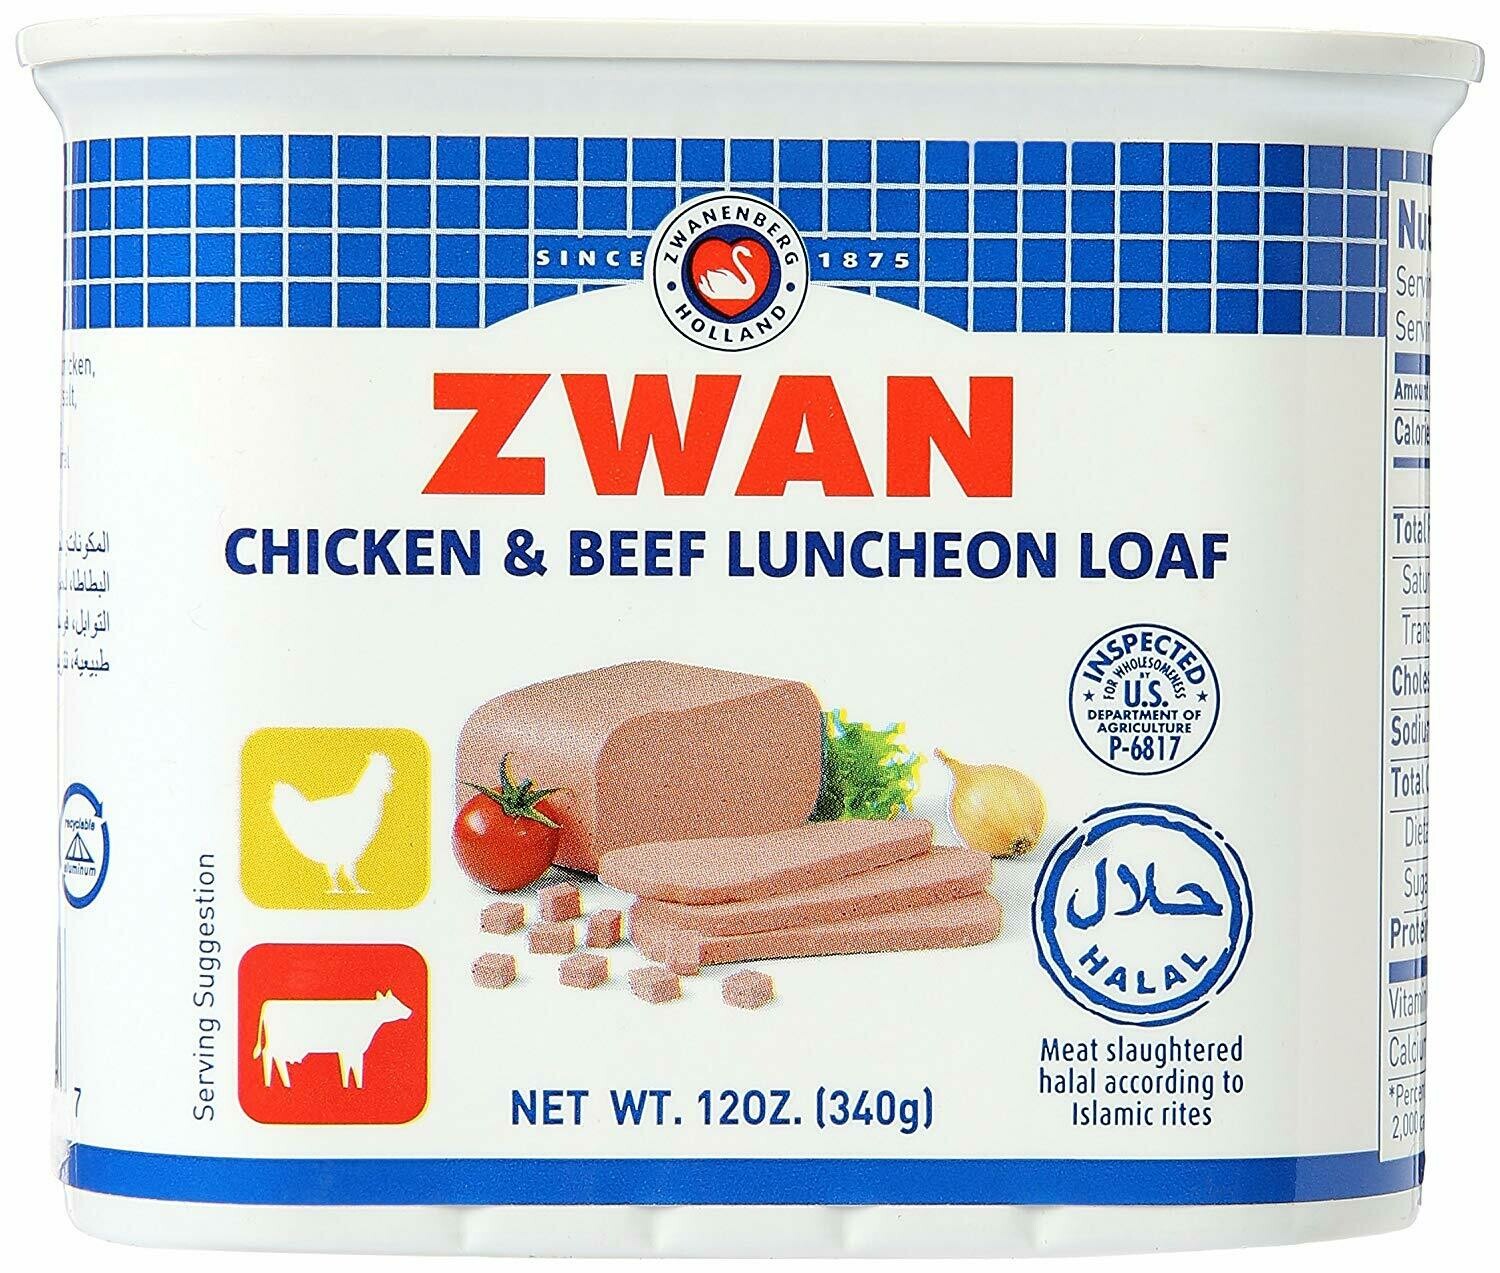 Zwan Luncheon Halal Loaf, Chicken/Beef 340g